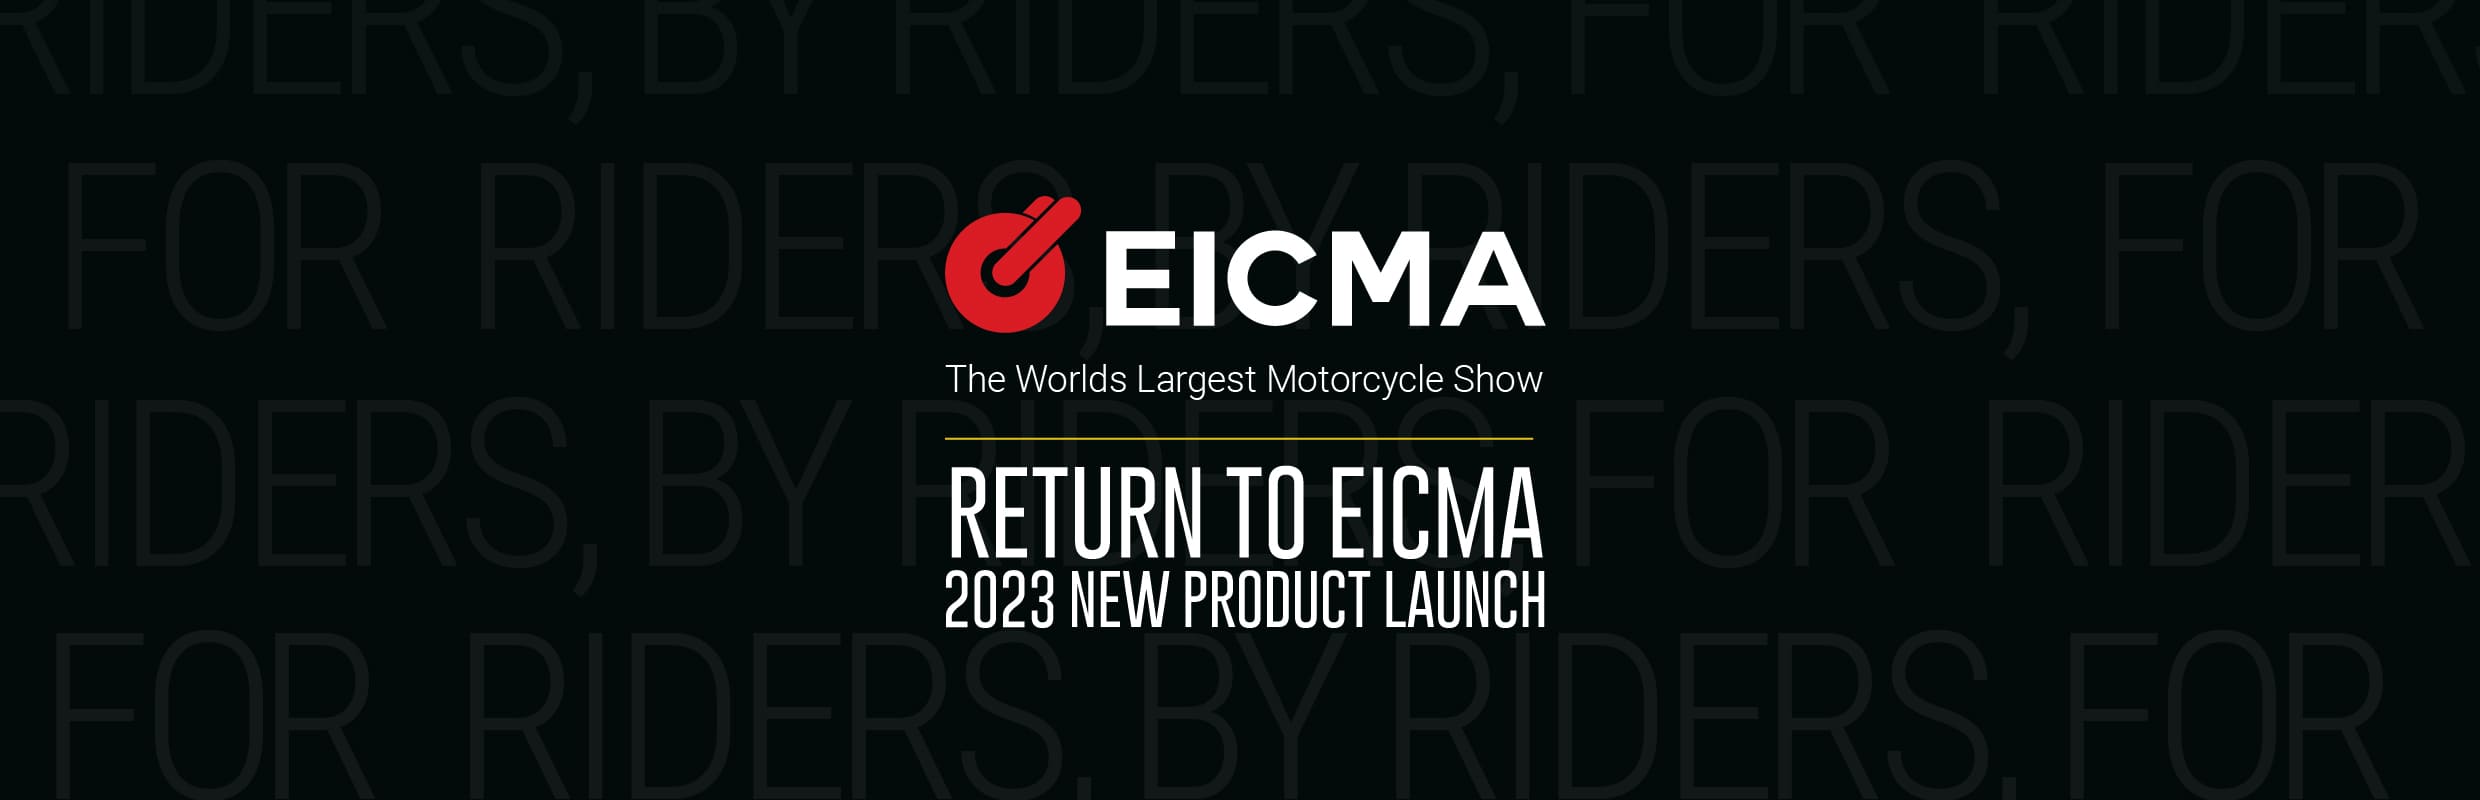 Merlin Bike Gear at EICMA 2022